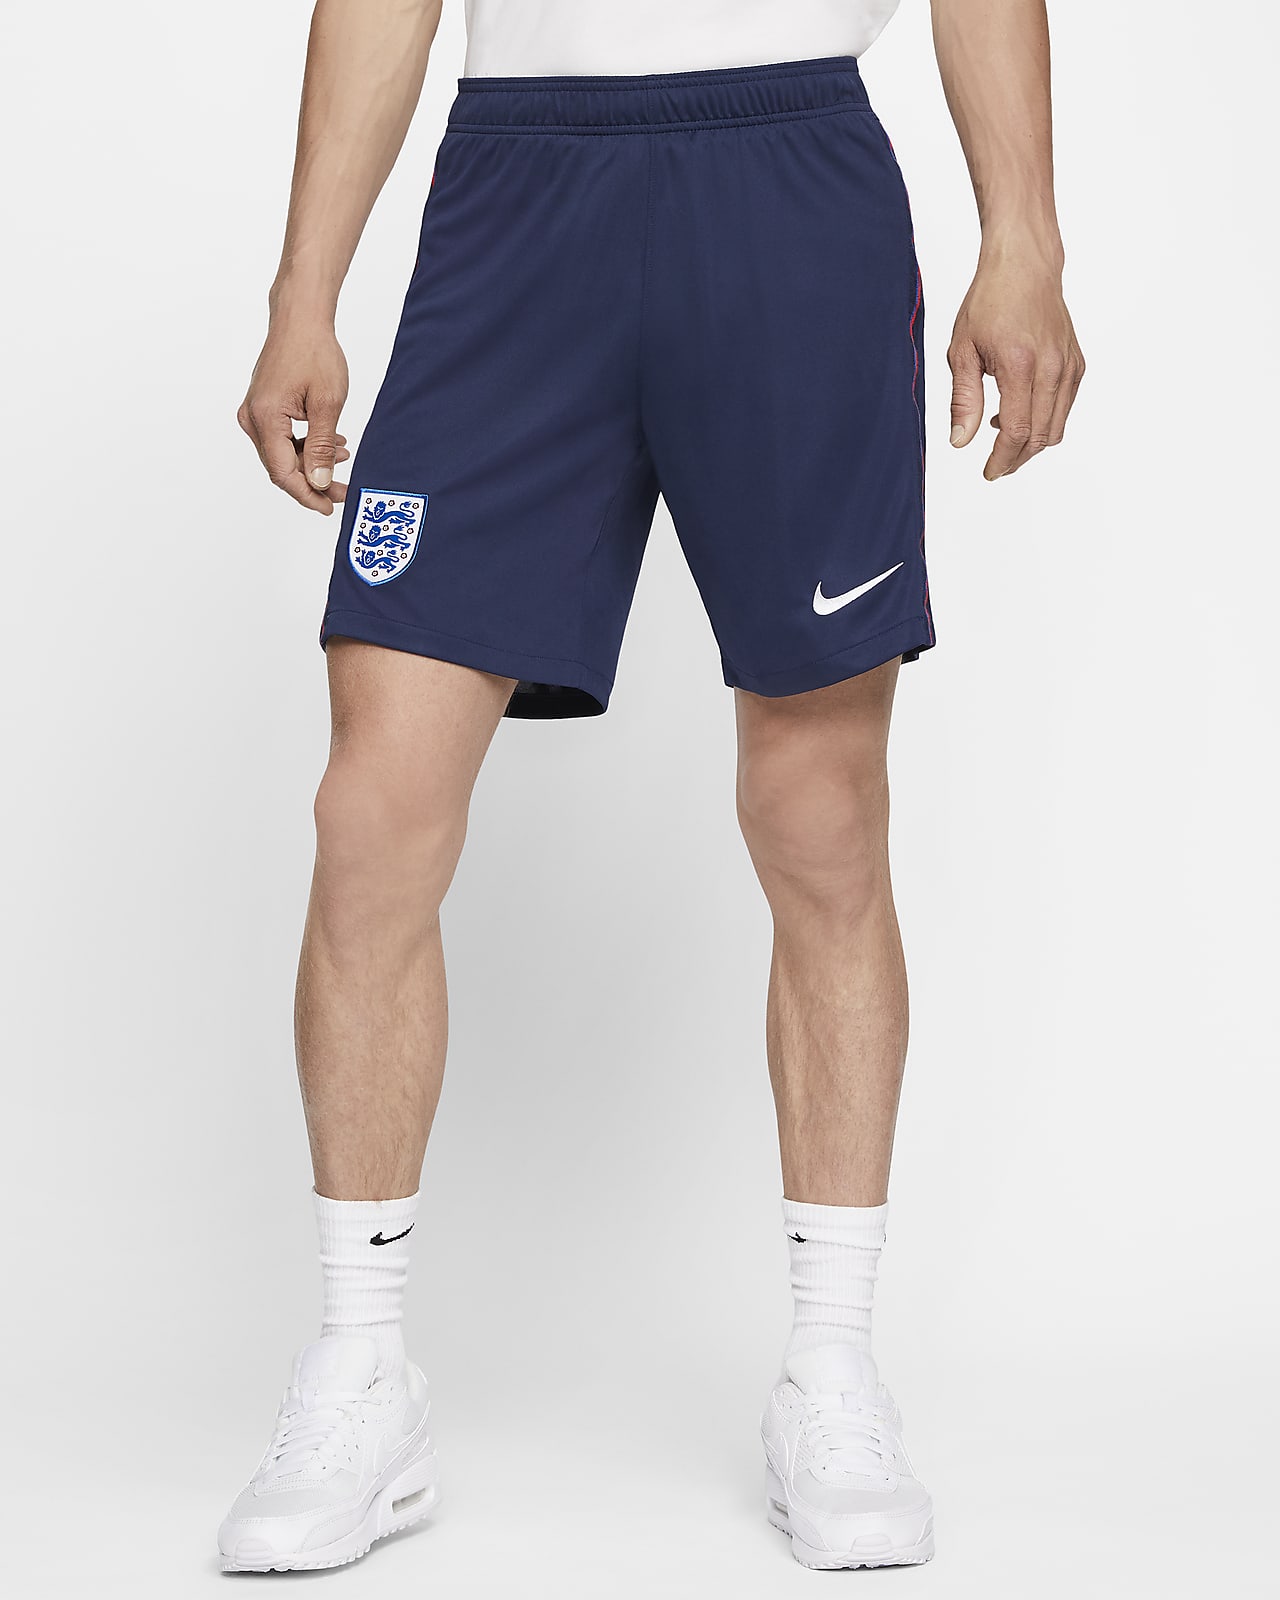 all white nike soccer shorts